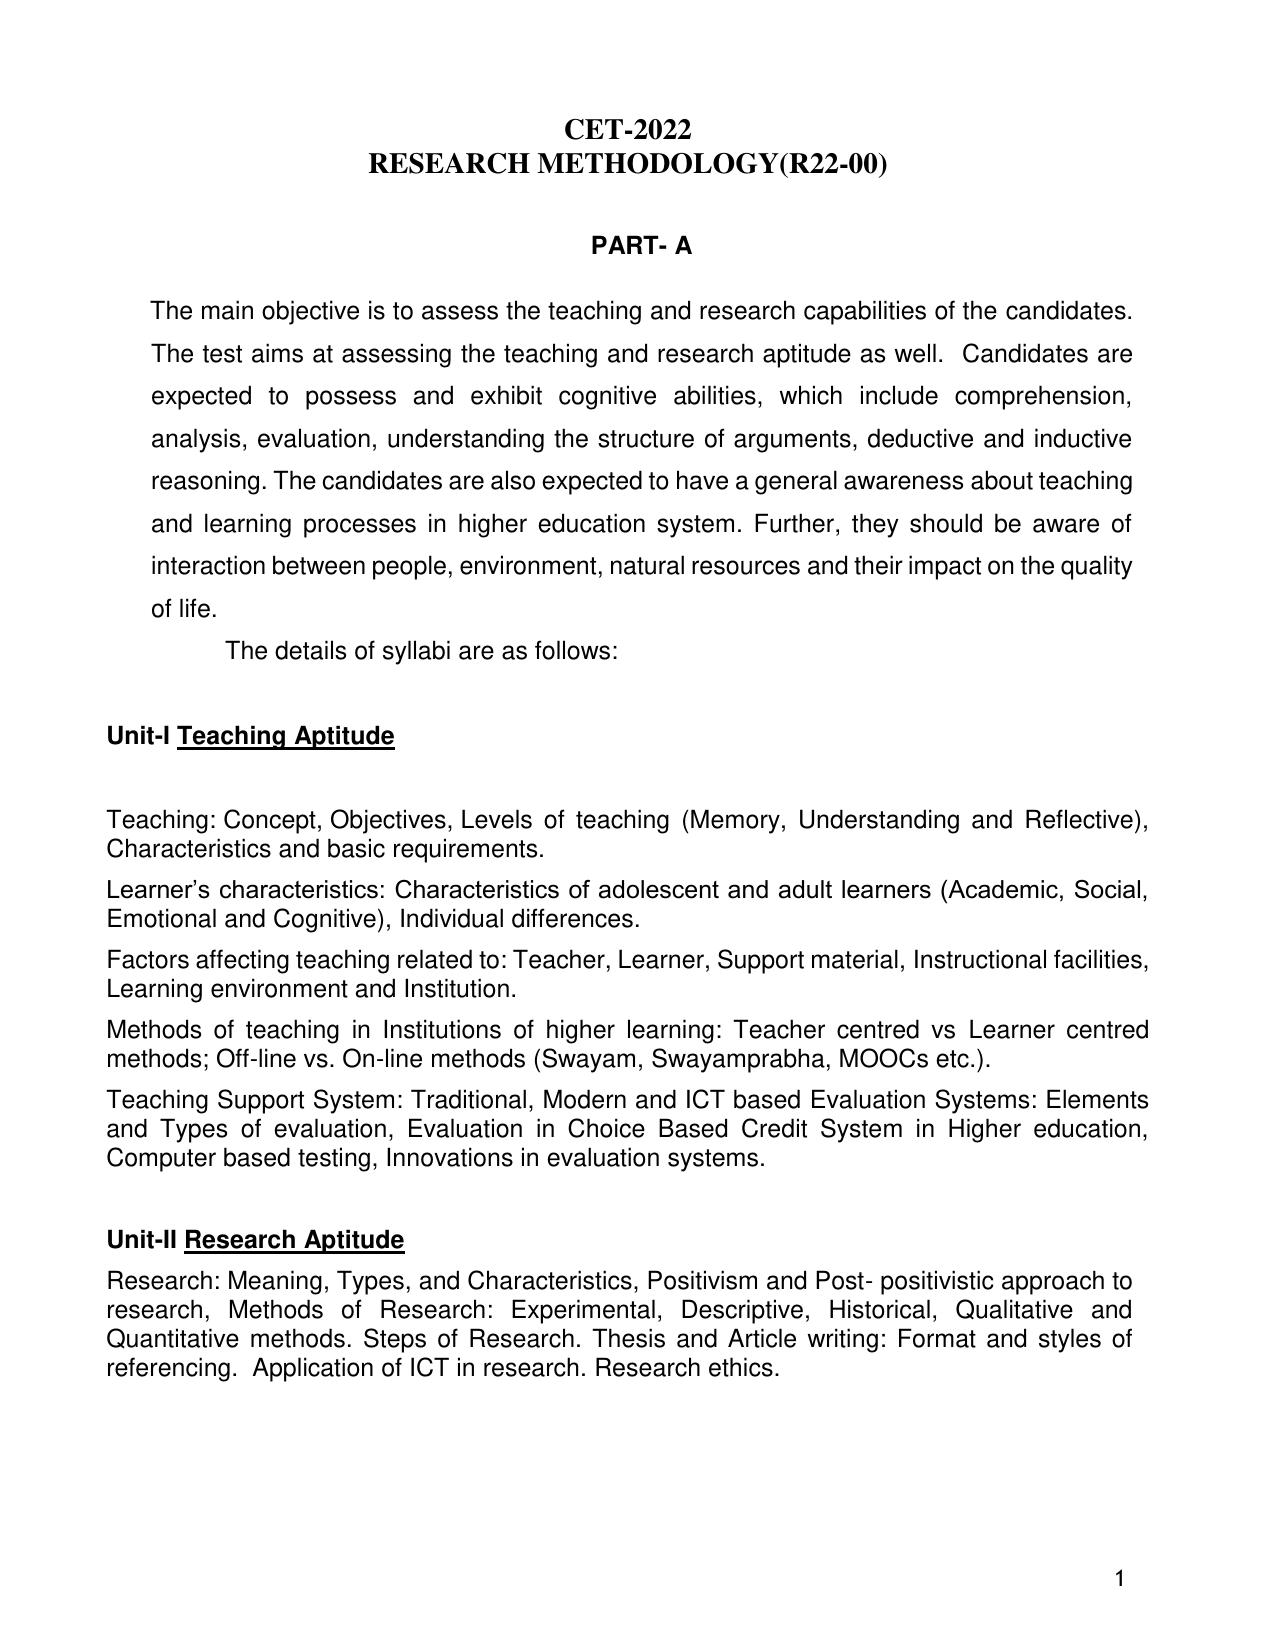 AP RCET Research Methodology Syllabus - Page 1